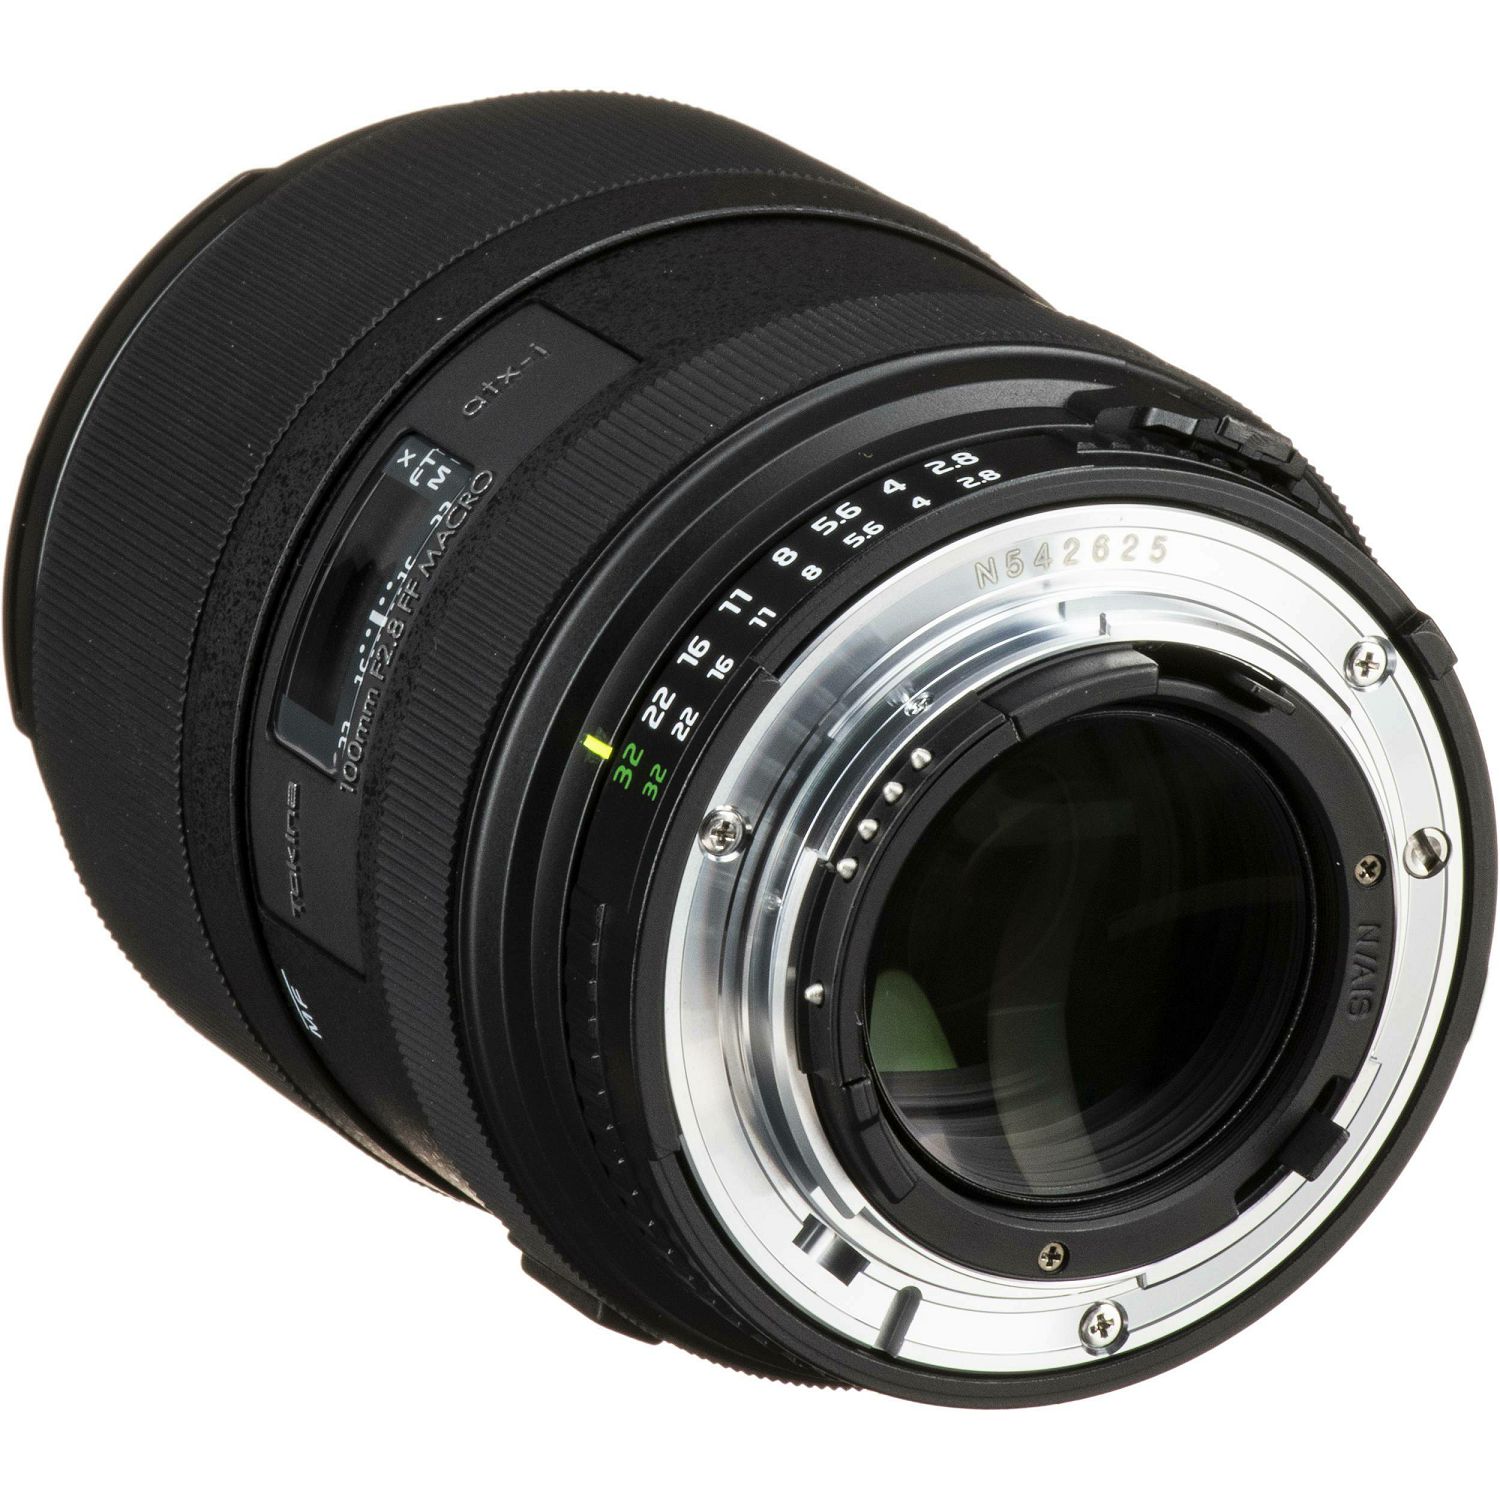 Tokina ATX-i 100mm f/2.8 FF Macro objektiv za Nikon FX (T510003iN)